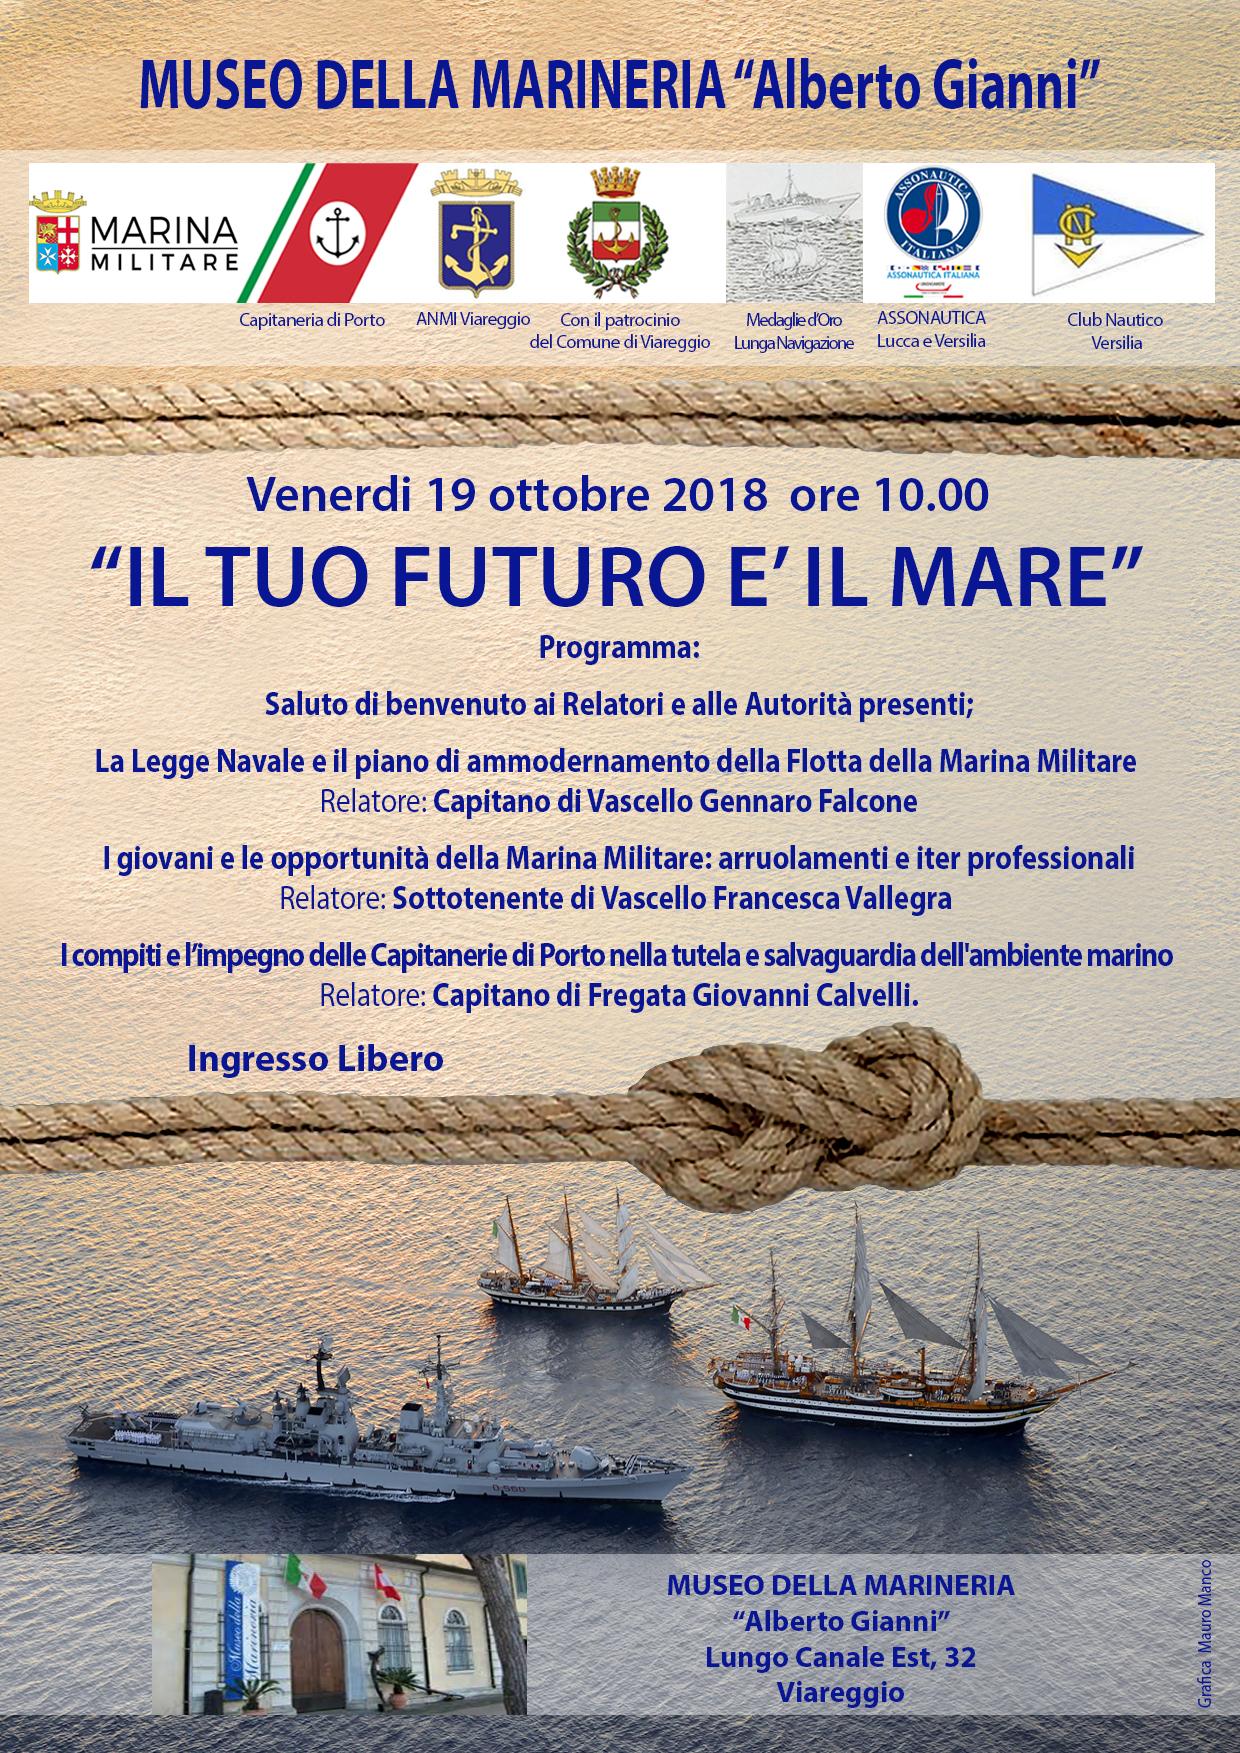 L’ammodernamento della squadra navale della Marina Militare, appuntamento al Museo della Marineria